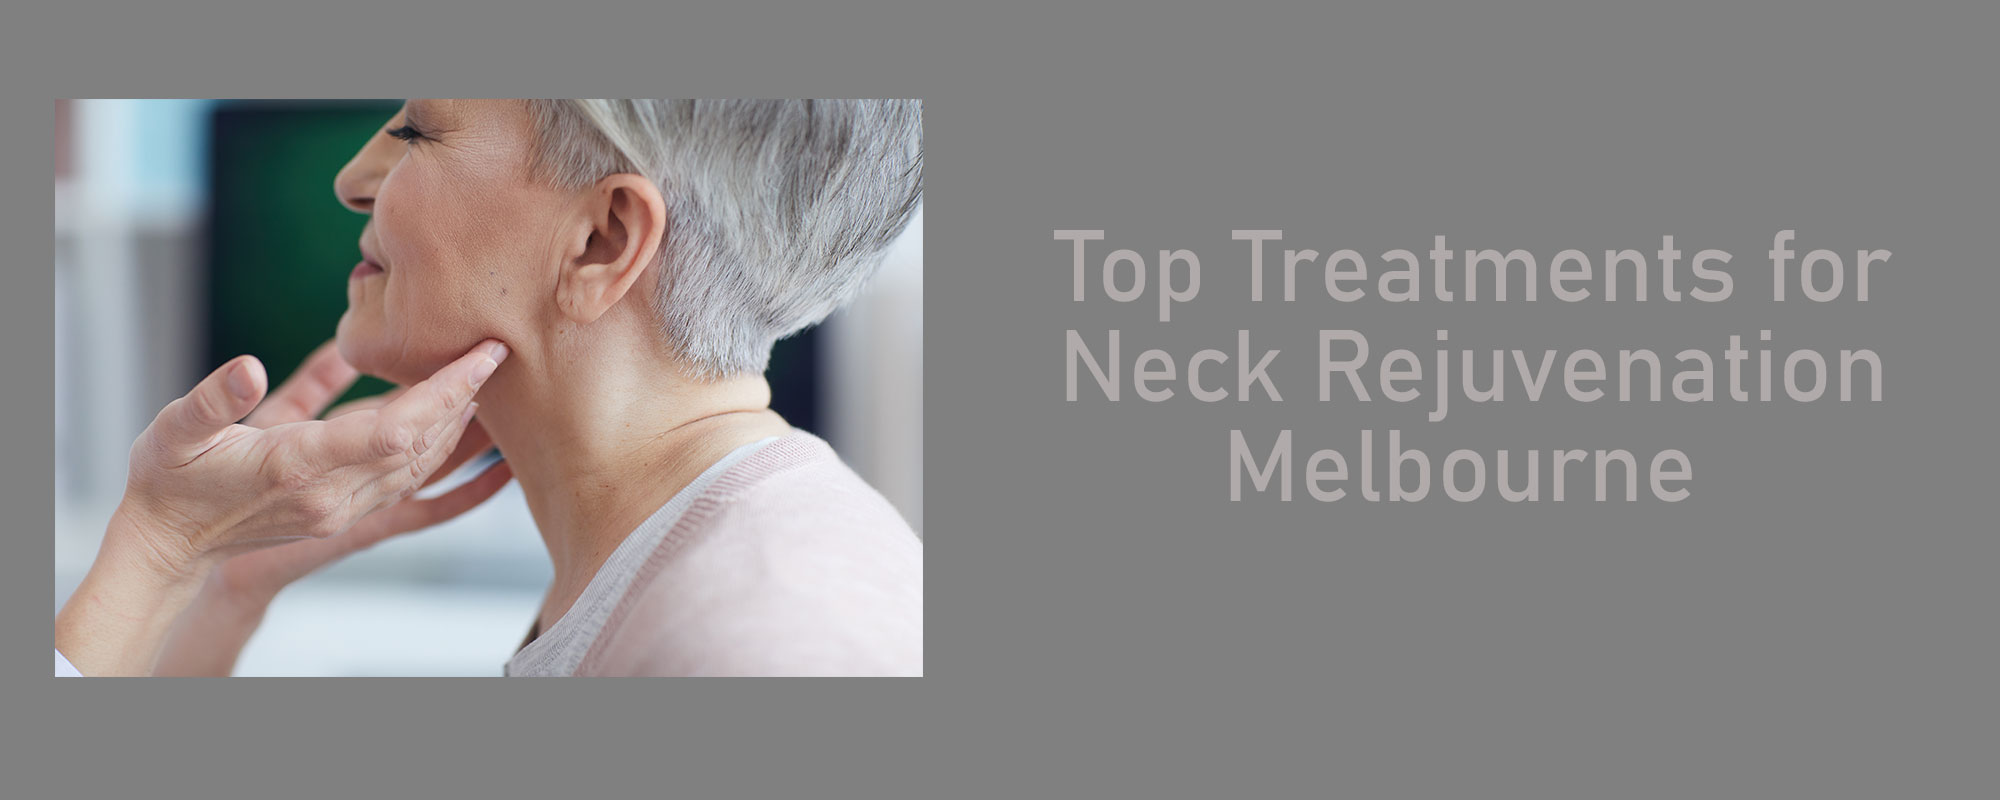 Top Treatments for Neck Rejuvenation Melbourne - 1